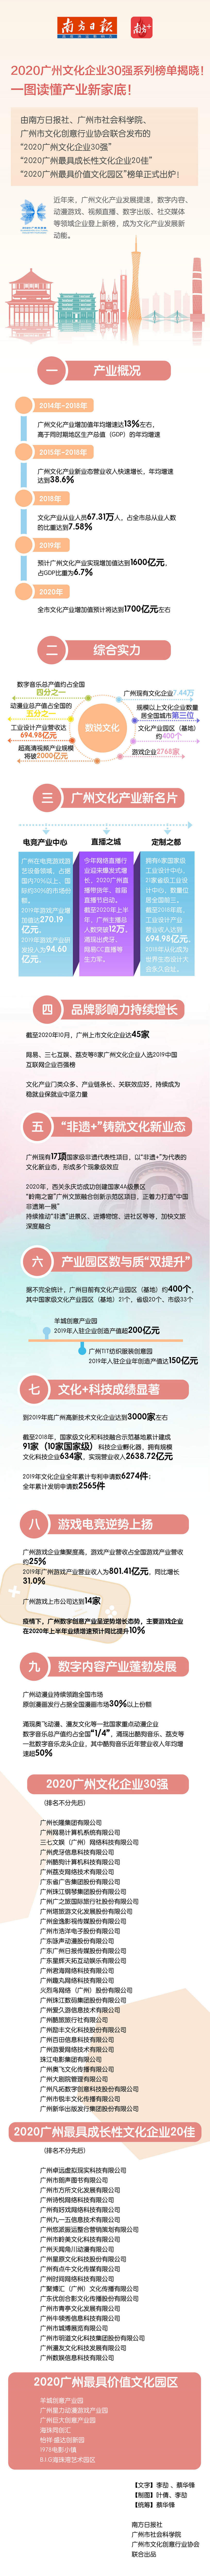 广州文化企业30强榜单